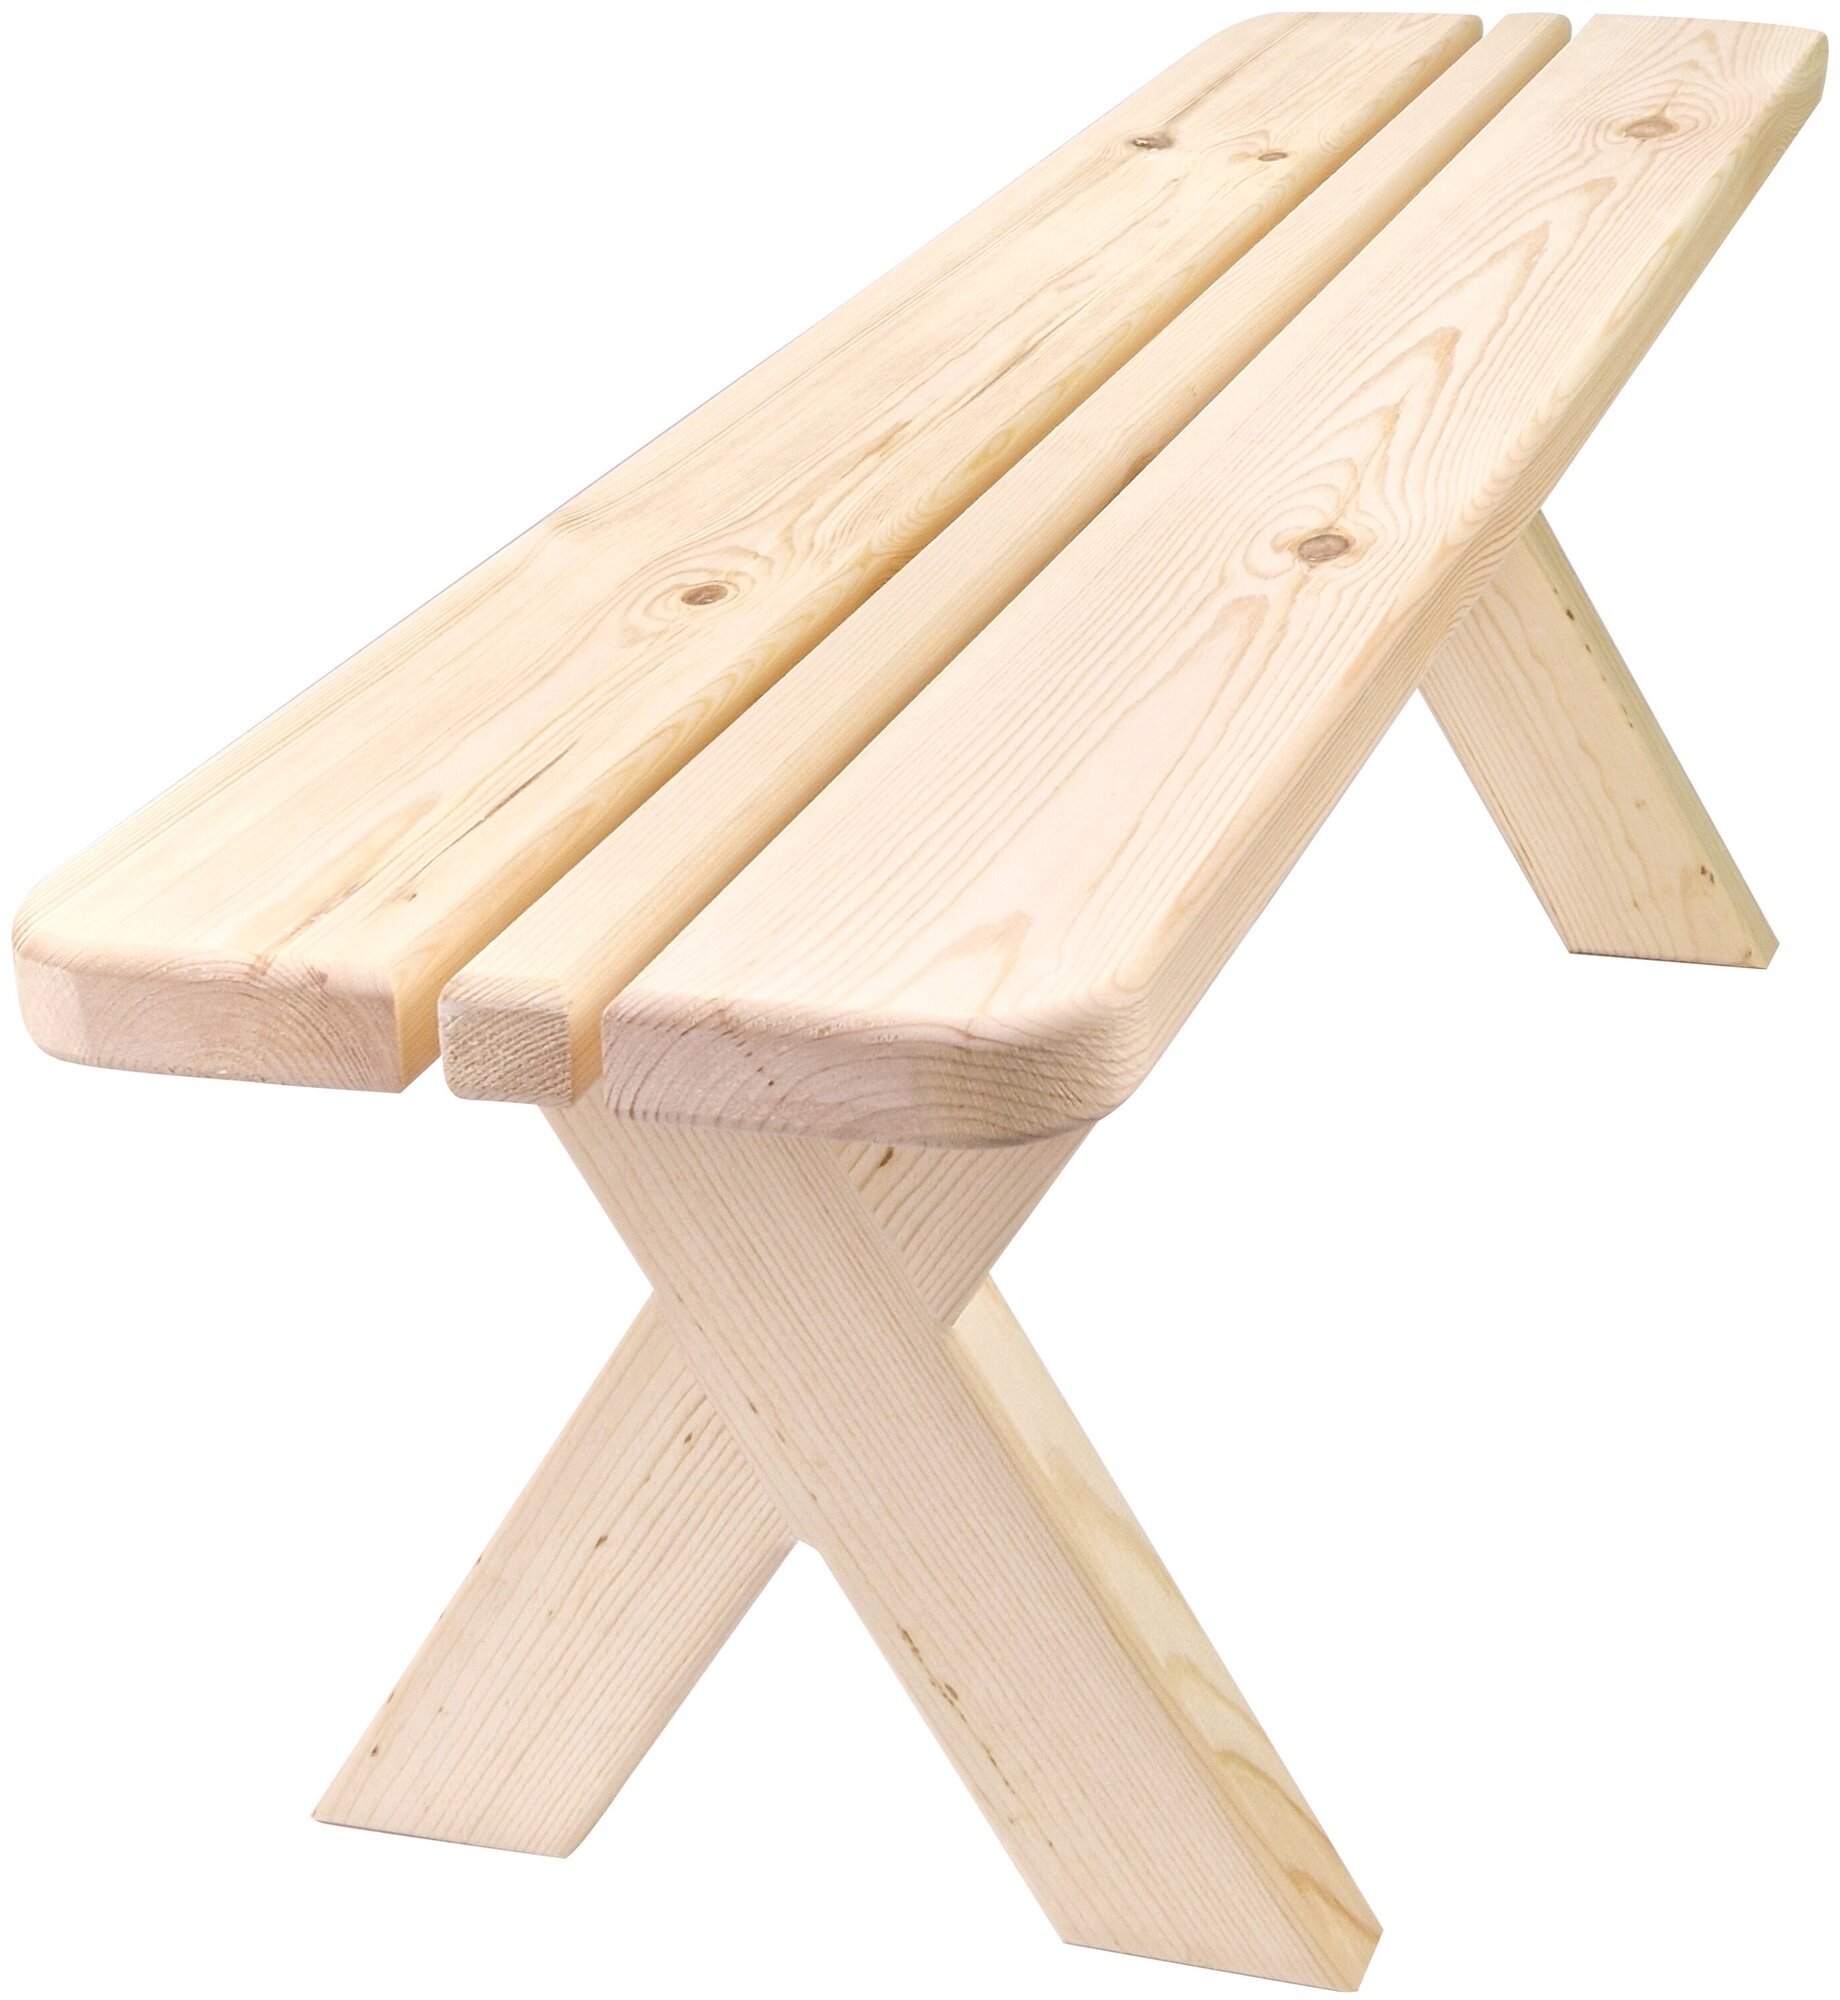 Скамейка деревянная 1.5 метра из массива Вологодской сосны люкс. Для сада / дома / бани /сауны